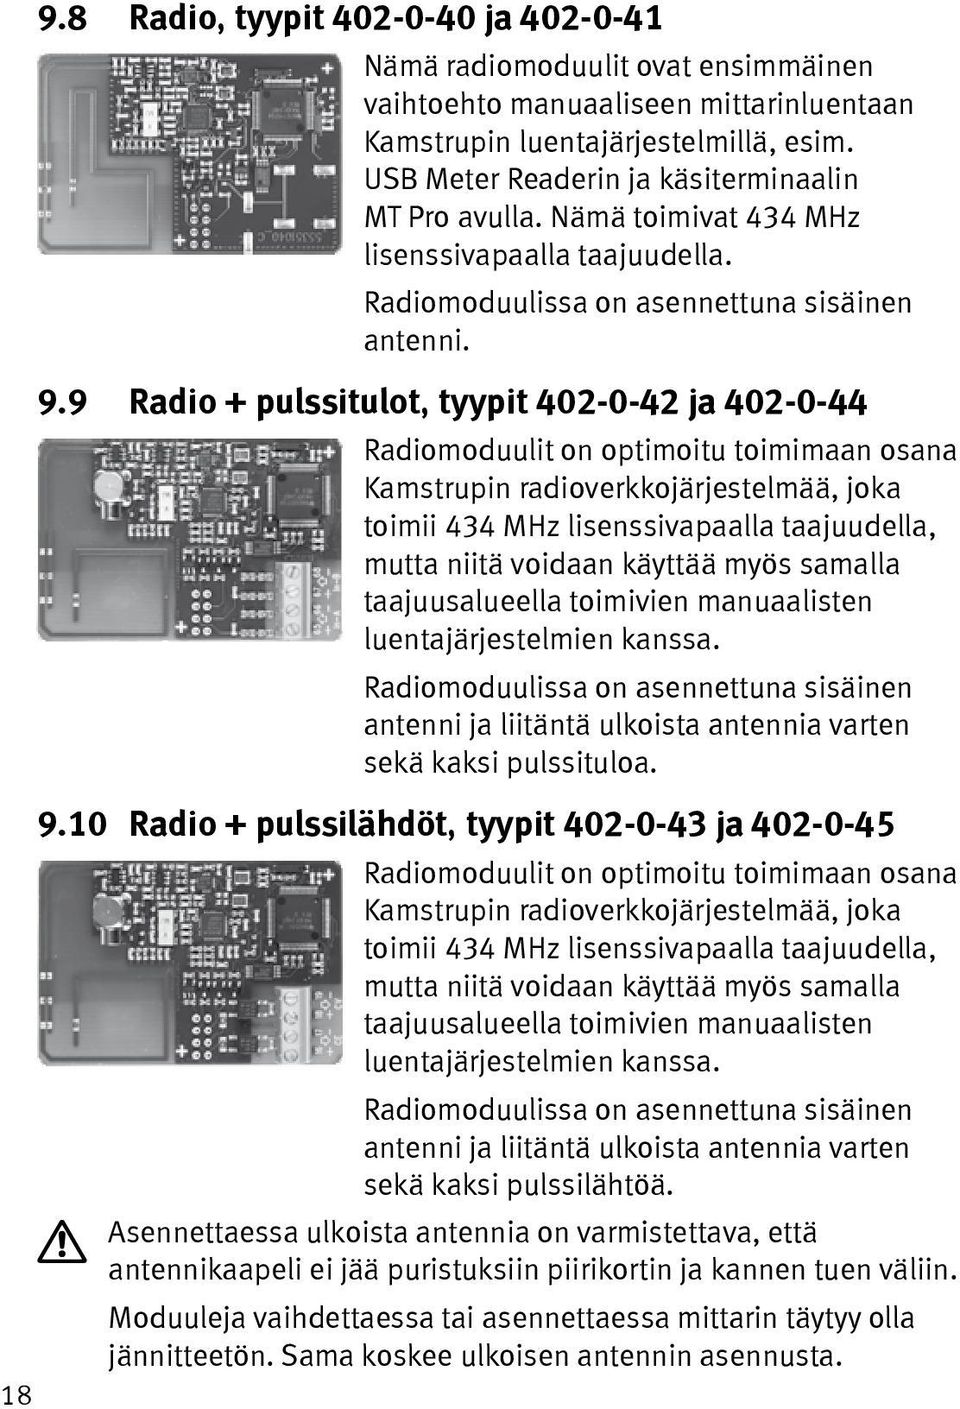 9 Radio + pulssitulot, tyypit 402-0-42 ja 402-0-44 Radiomoduulit on optimoitu toimimaan osana Kamstrupin radioverkkojärjestelmää, joka toimii 434 MHz lisenssivapaalla taajuudella, mutta niitä voidaan